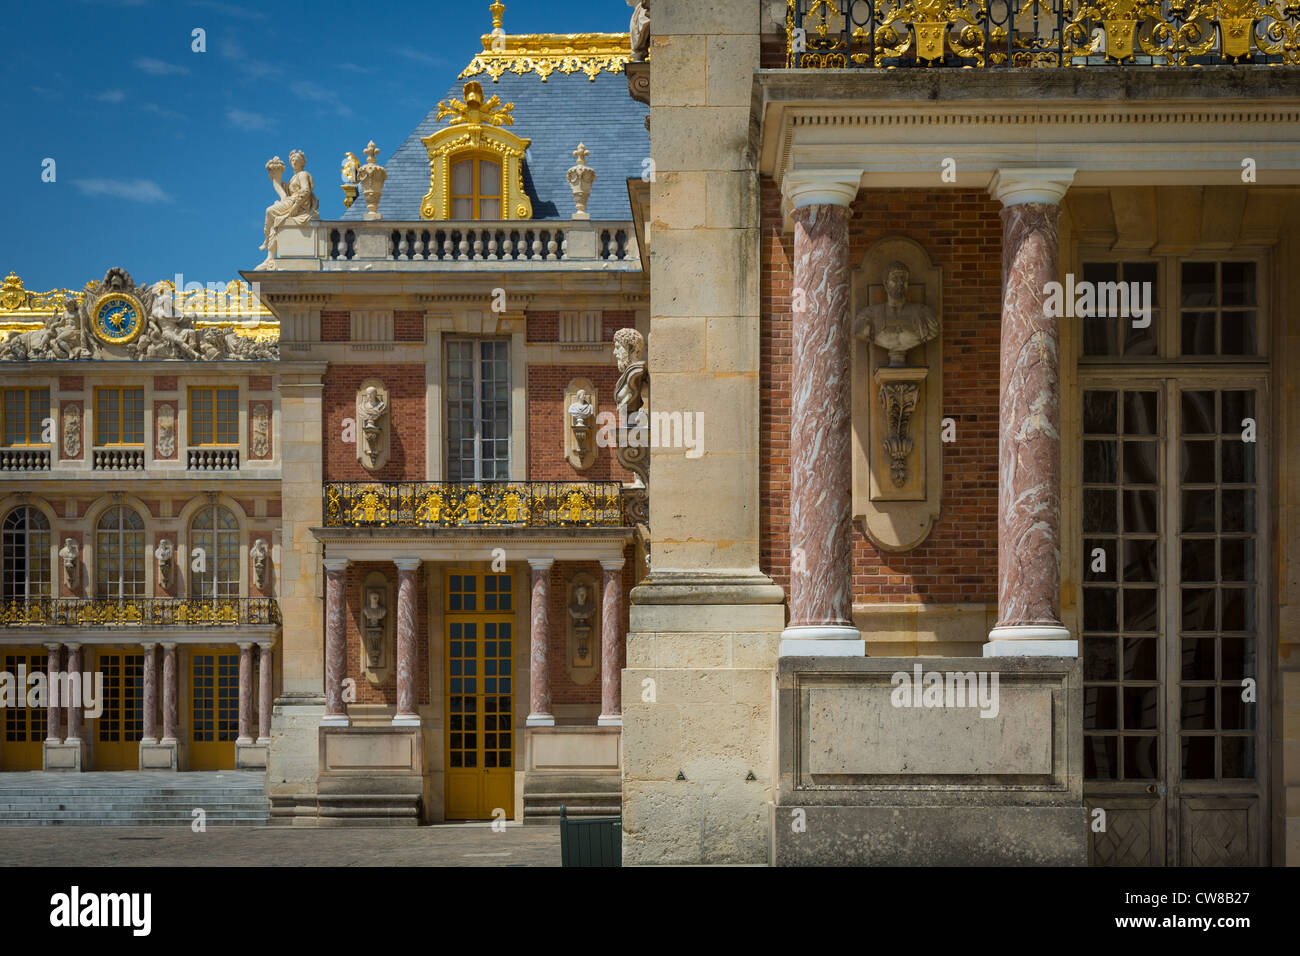 Les détails architecturaux à l'extérieur du palais royal de Versailles Paris, France Banque D'Images